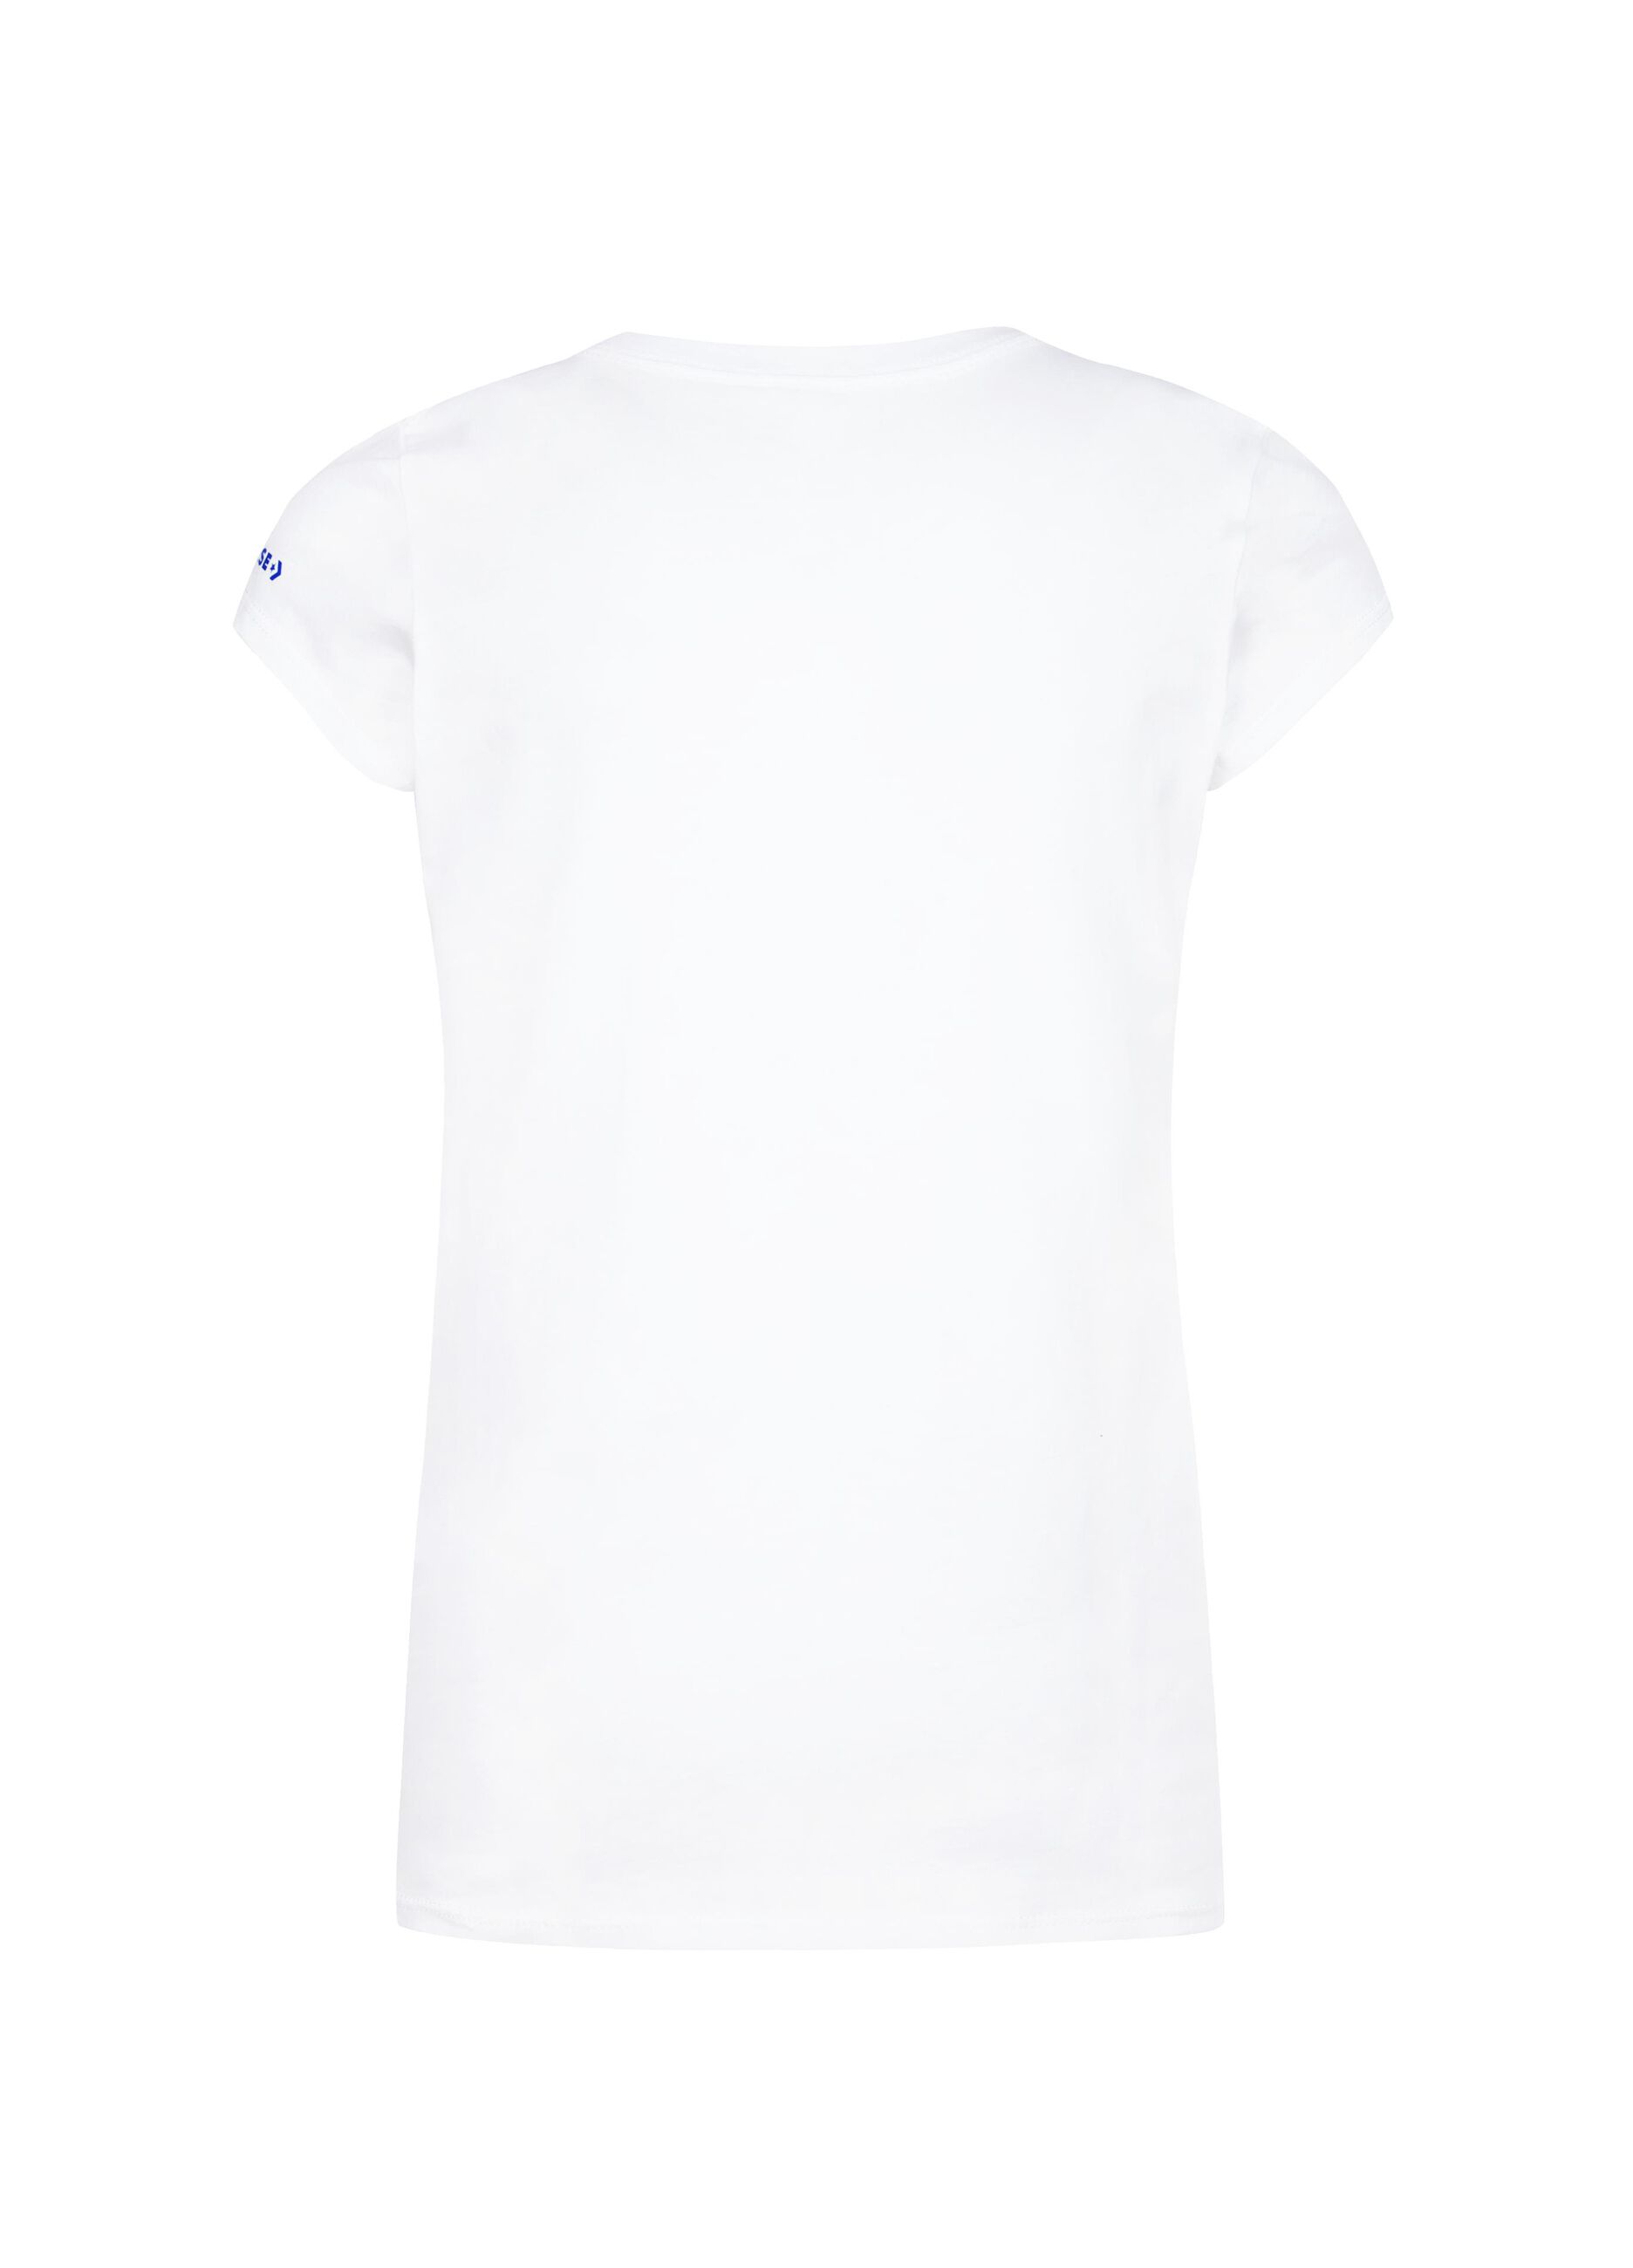 Camiseta slim fit logo Chuck Patch de purpurina estampado